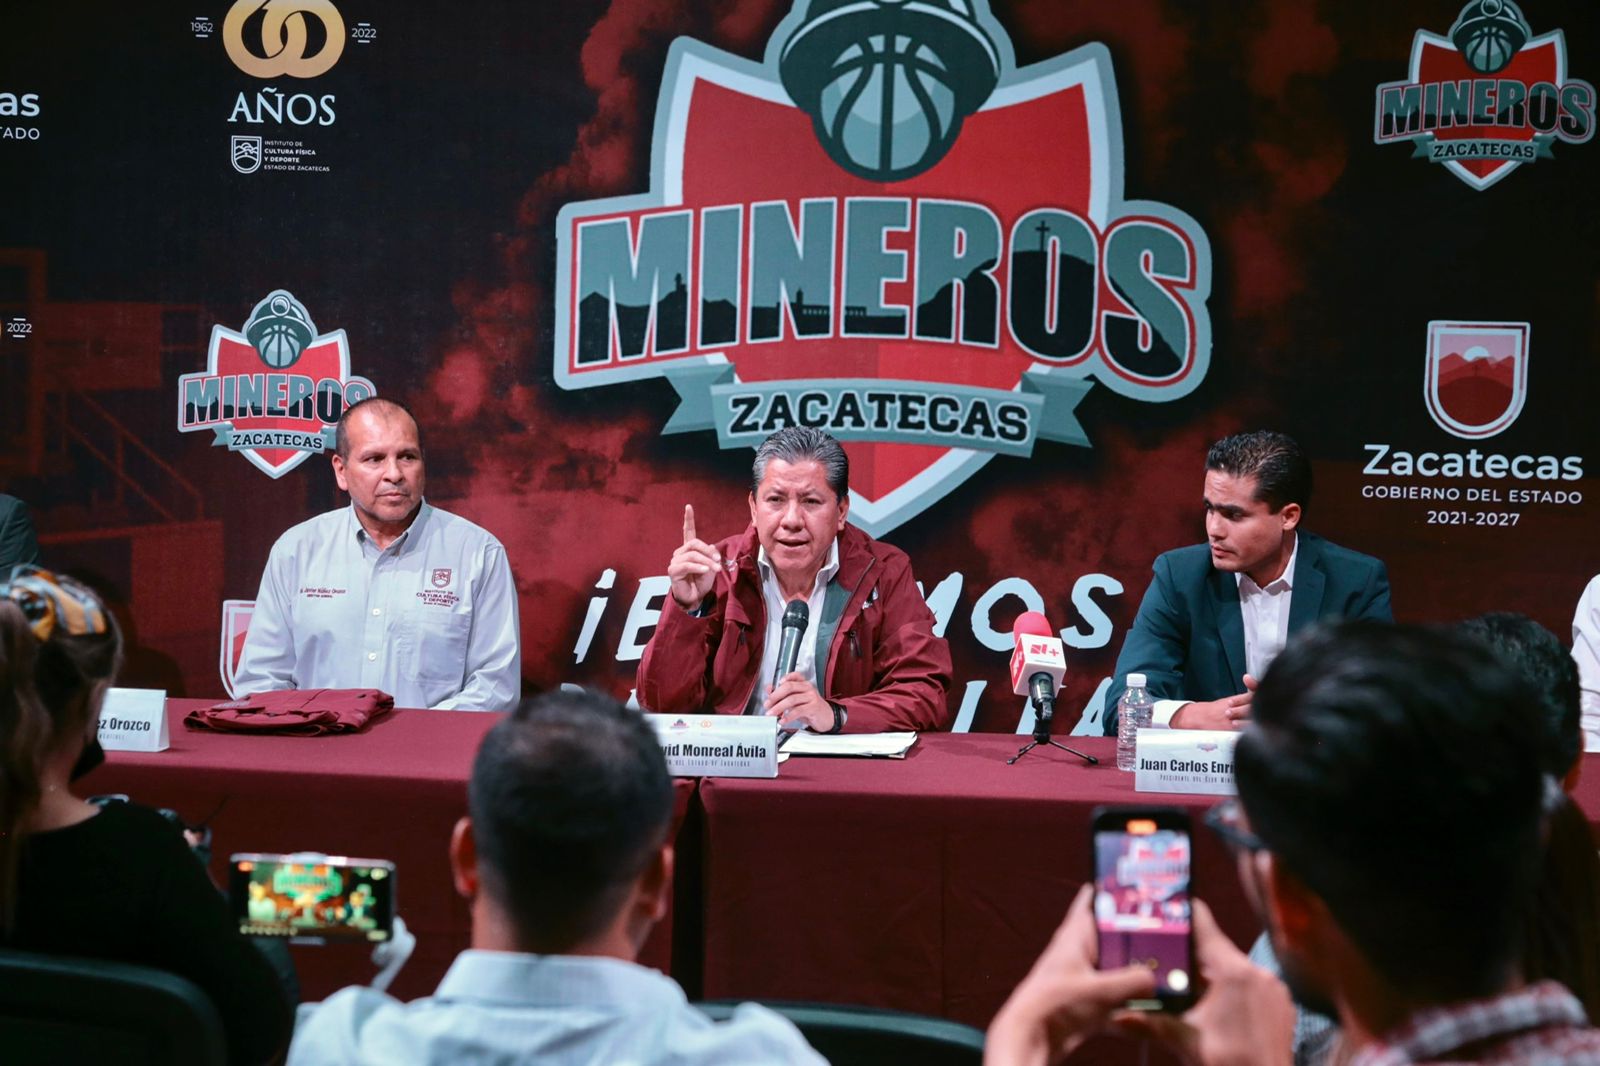 Anuncia Gobernador David Monreal el regreso de Mineros de Zacatecas a la Liga Nacional de Basquetbol Profesional